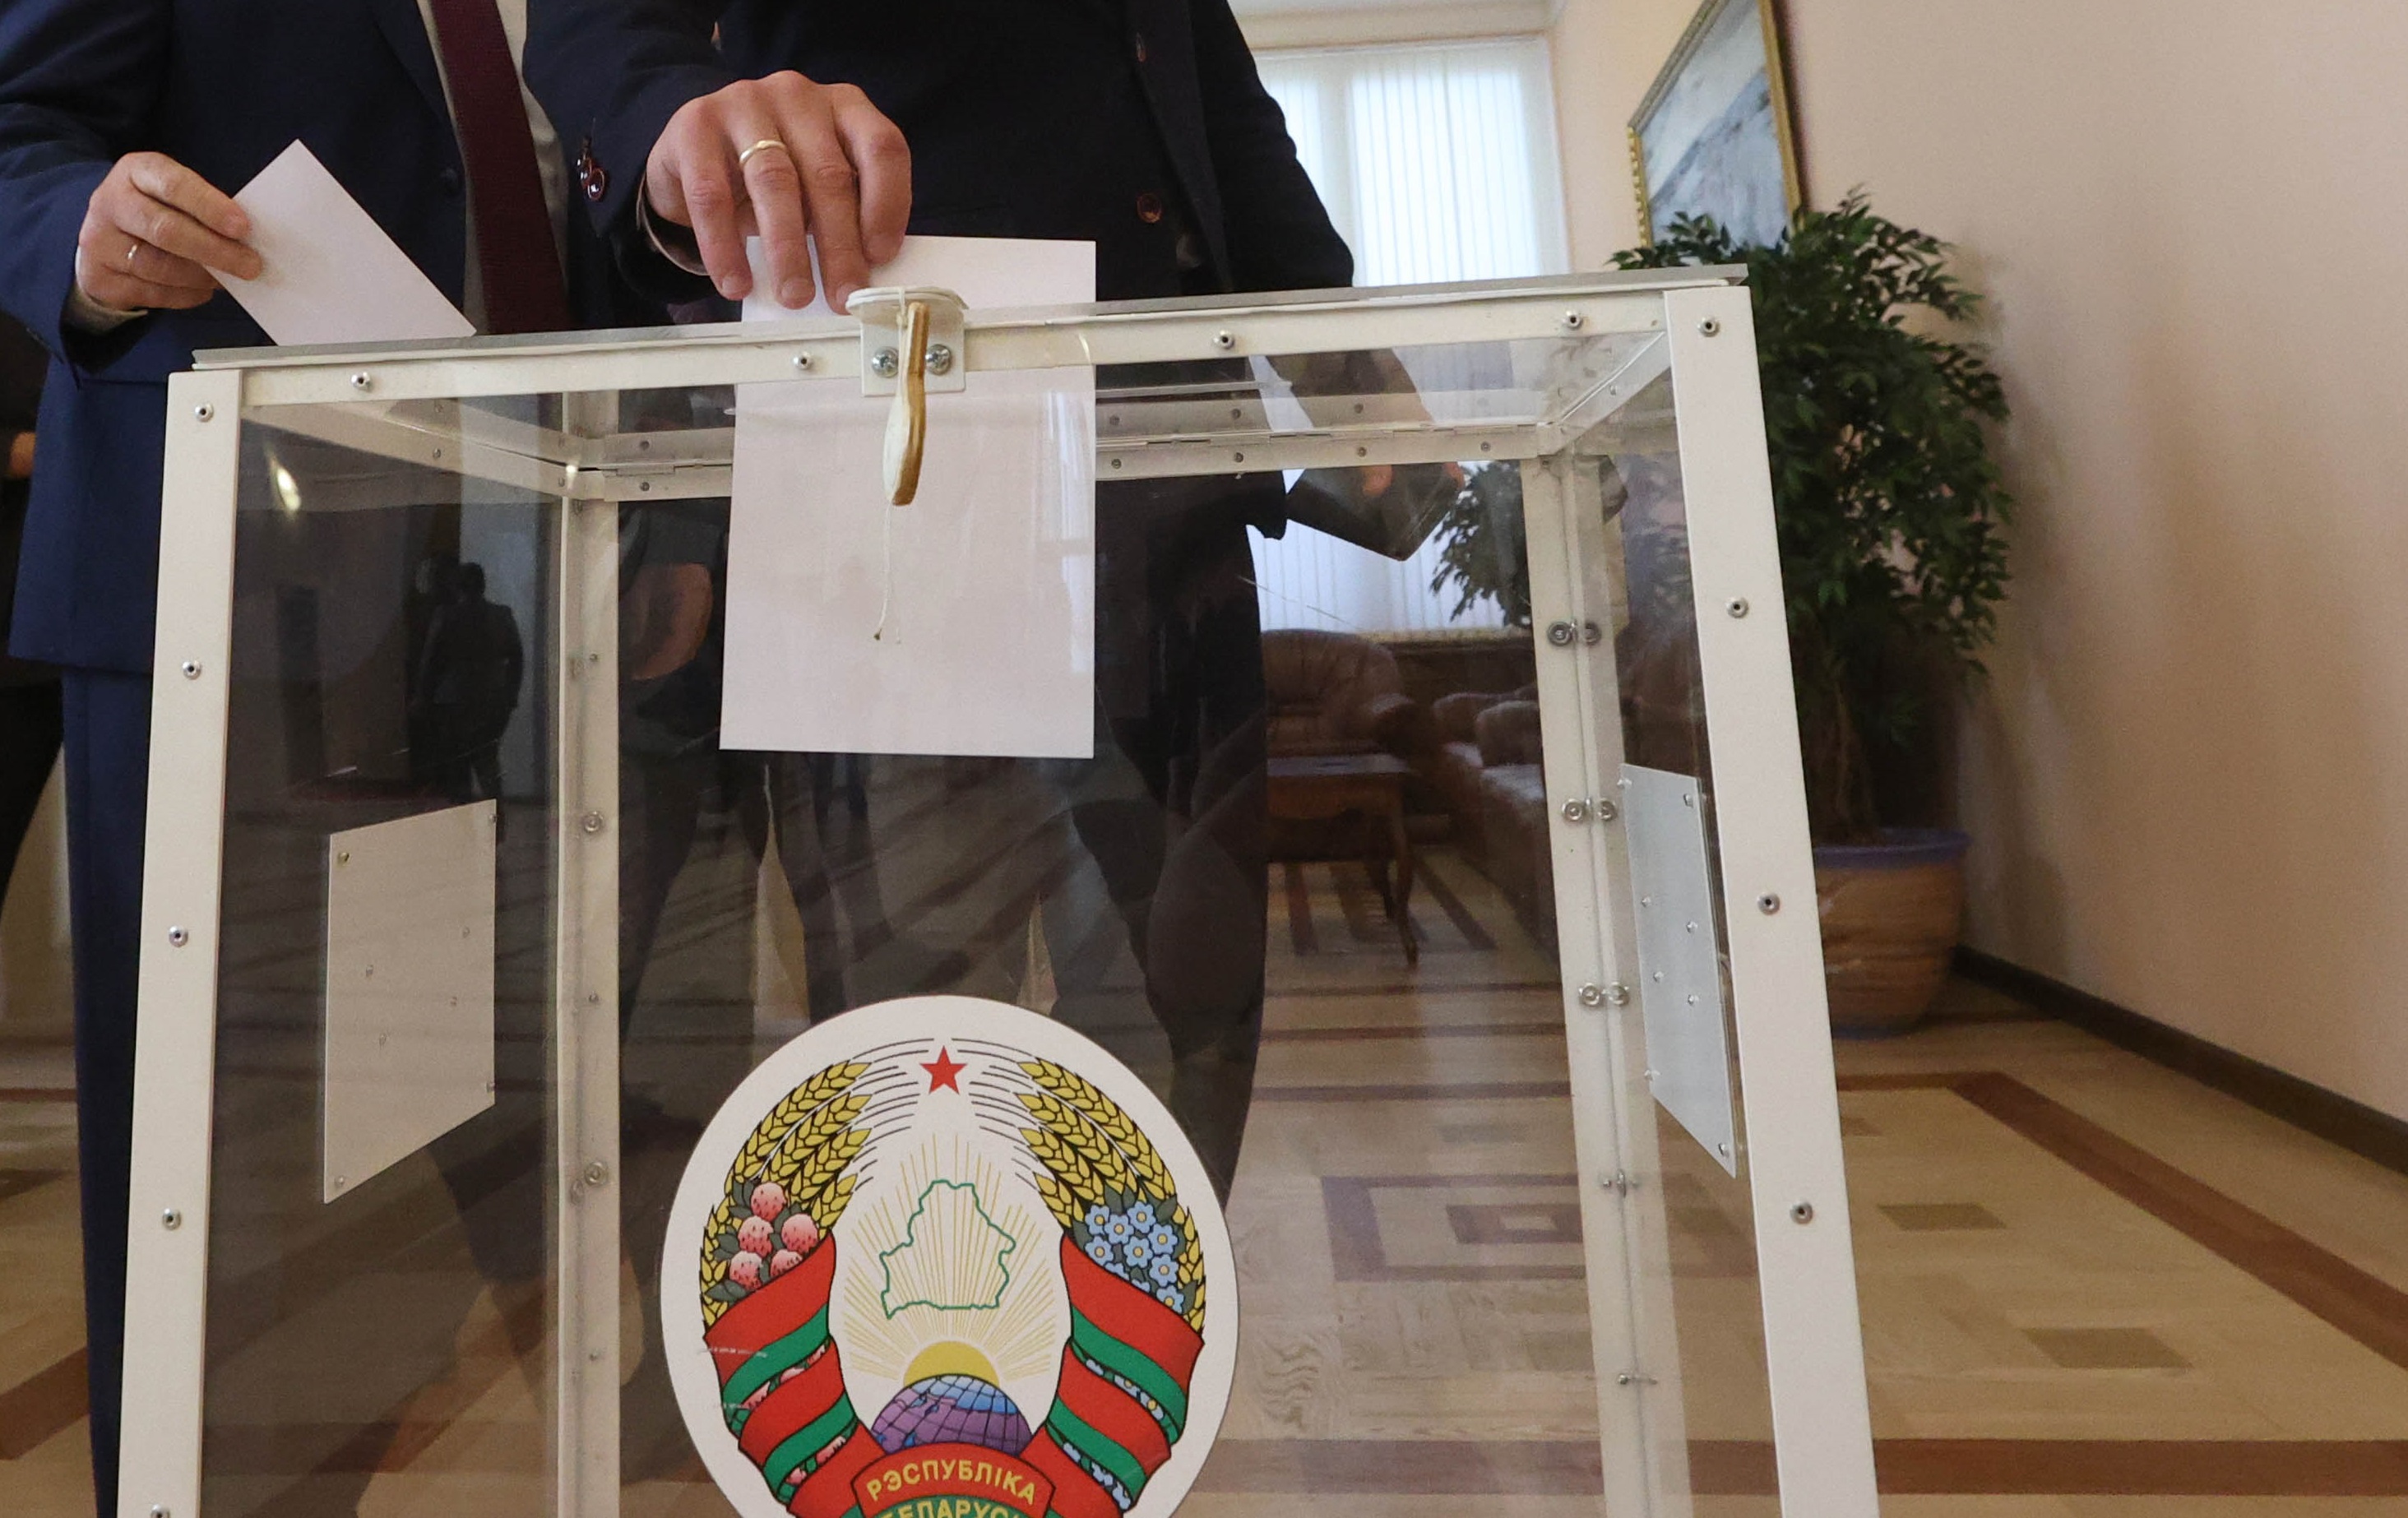 В Беларуси начинается досрочное голосование на выборах депутатов